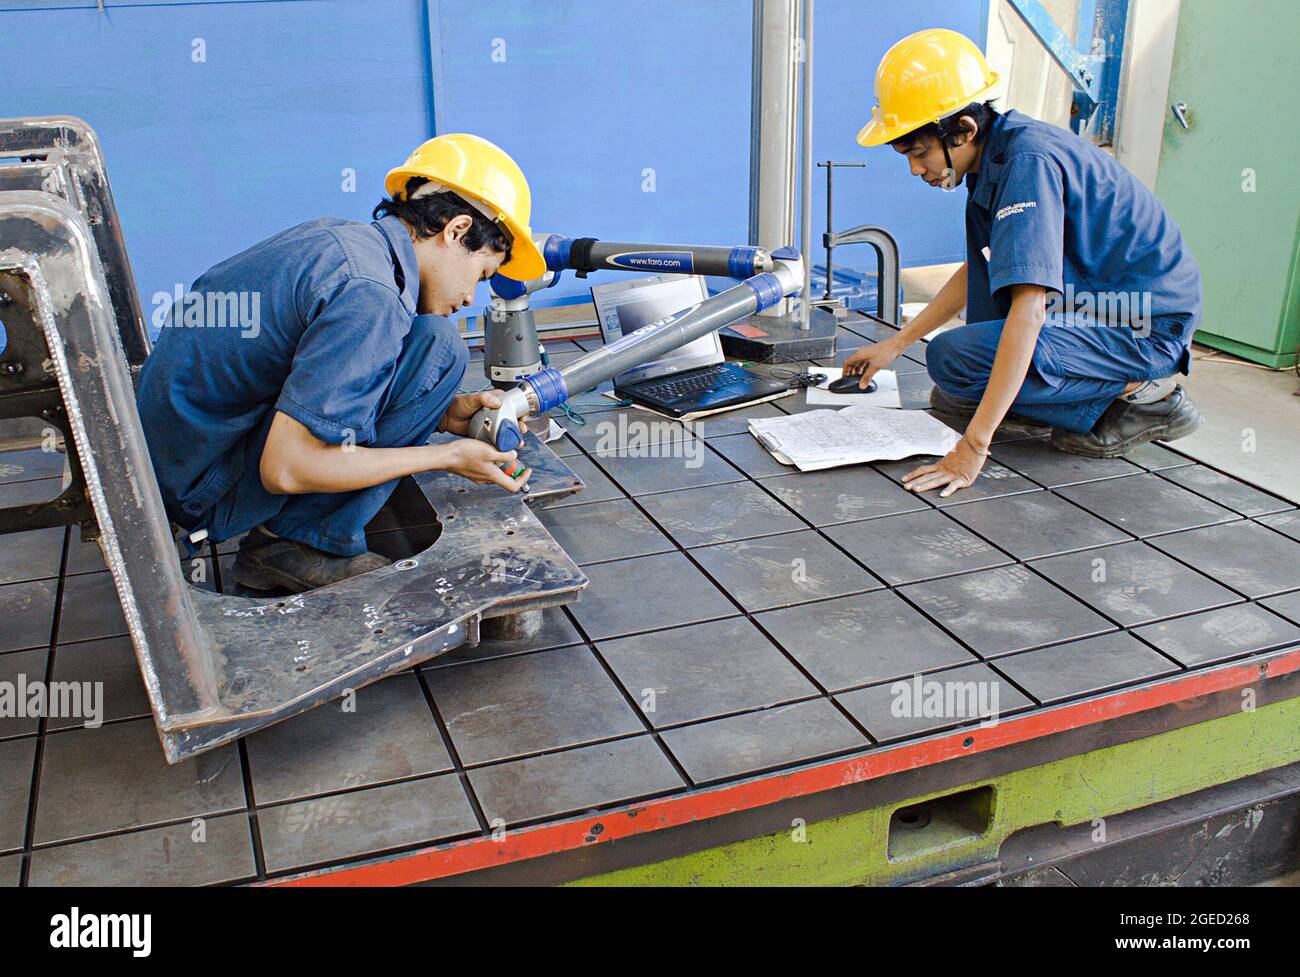 Zwei Techniker verwenden in einer Metallfabrik Messwerkzeug und Laptop. Stockfoto